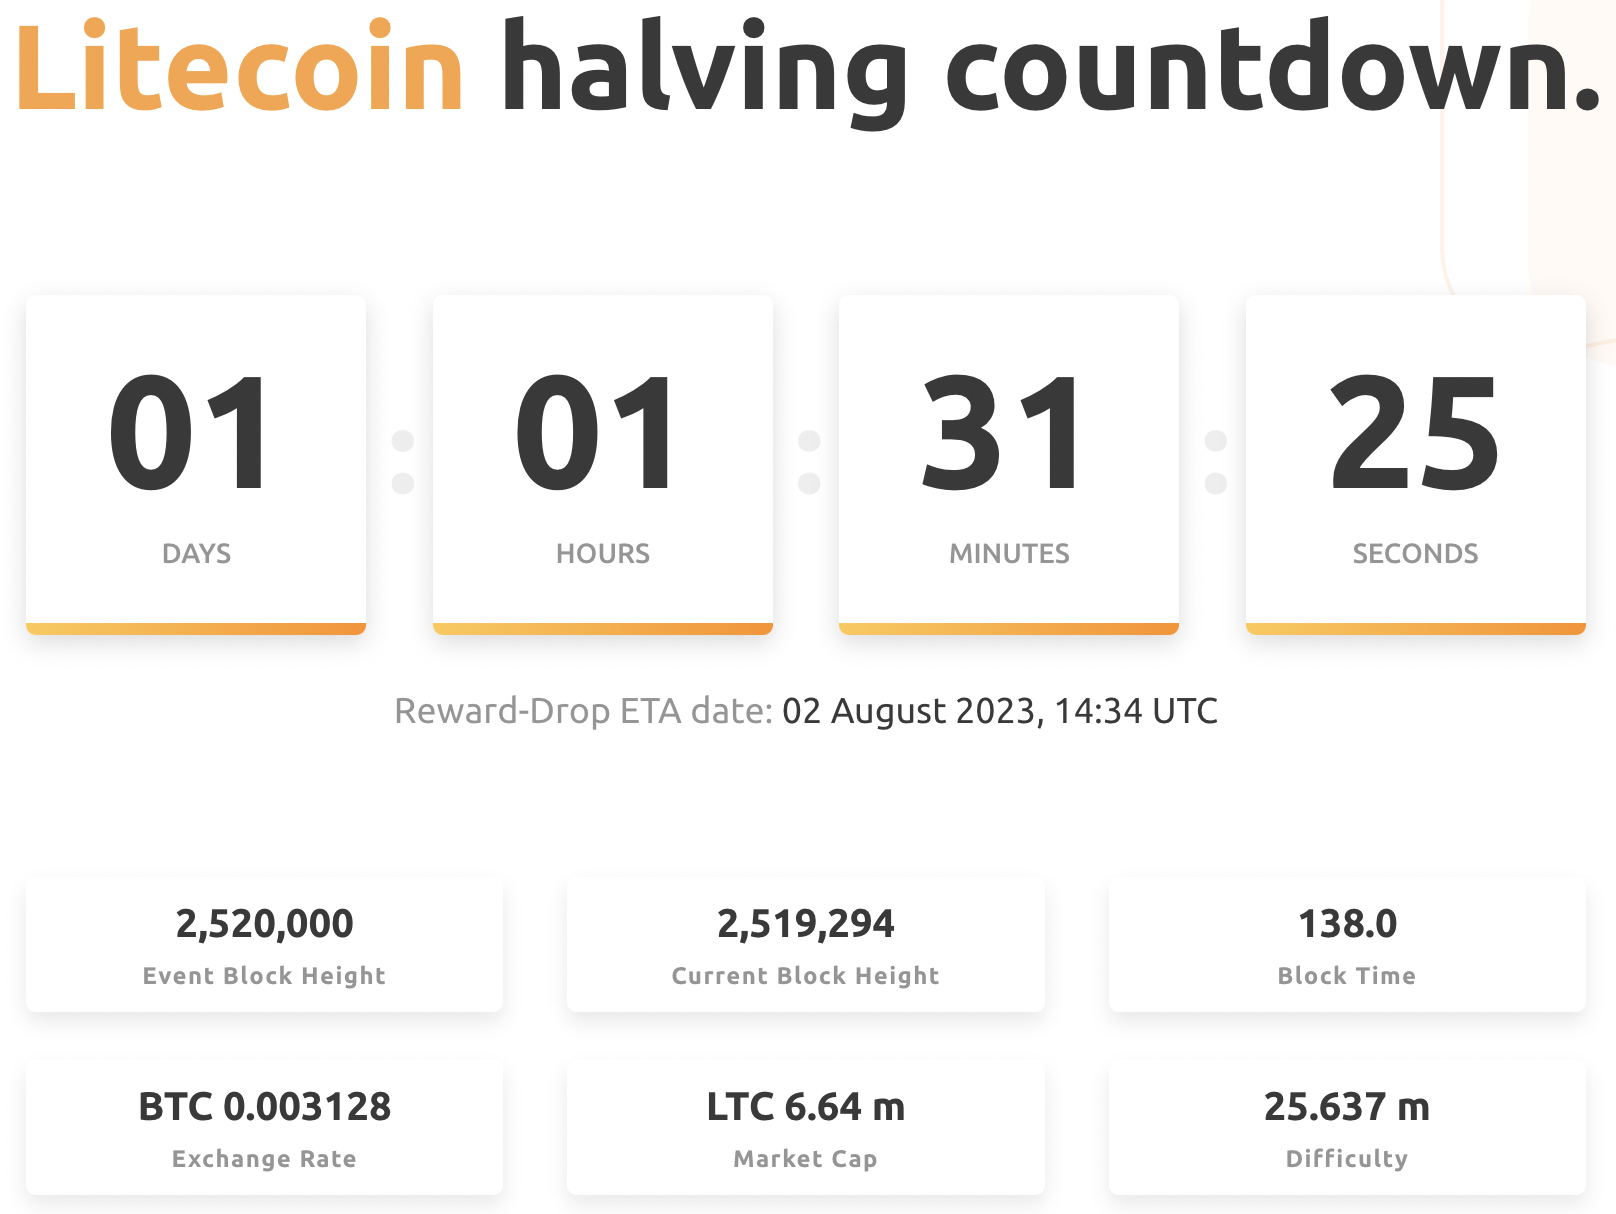 Litecoin halving countdown on Nicehash.com